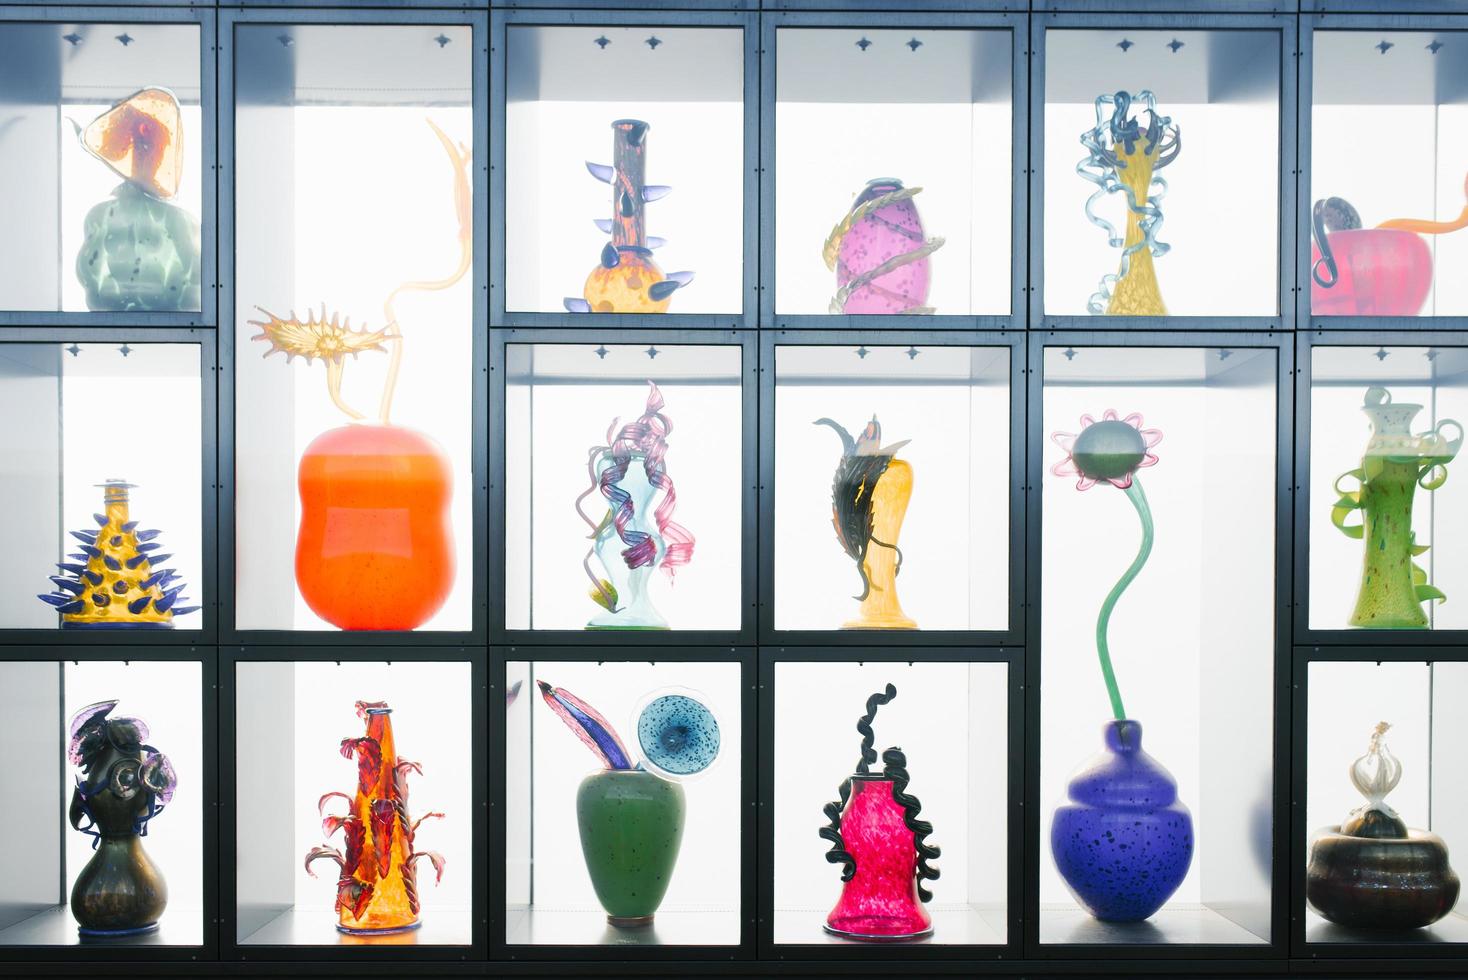 tacoma, washington, états-unis. mars 2021. objets d'art en verre sur les étagères du musée. vases colorés photo